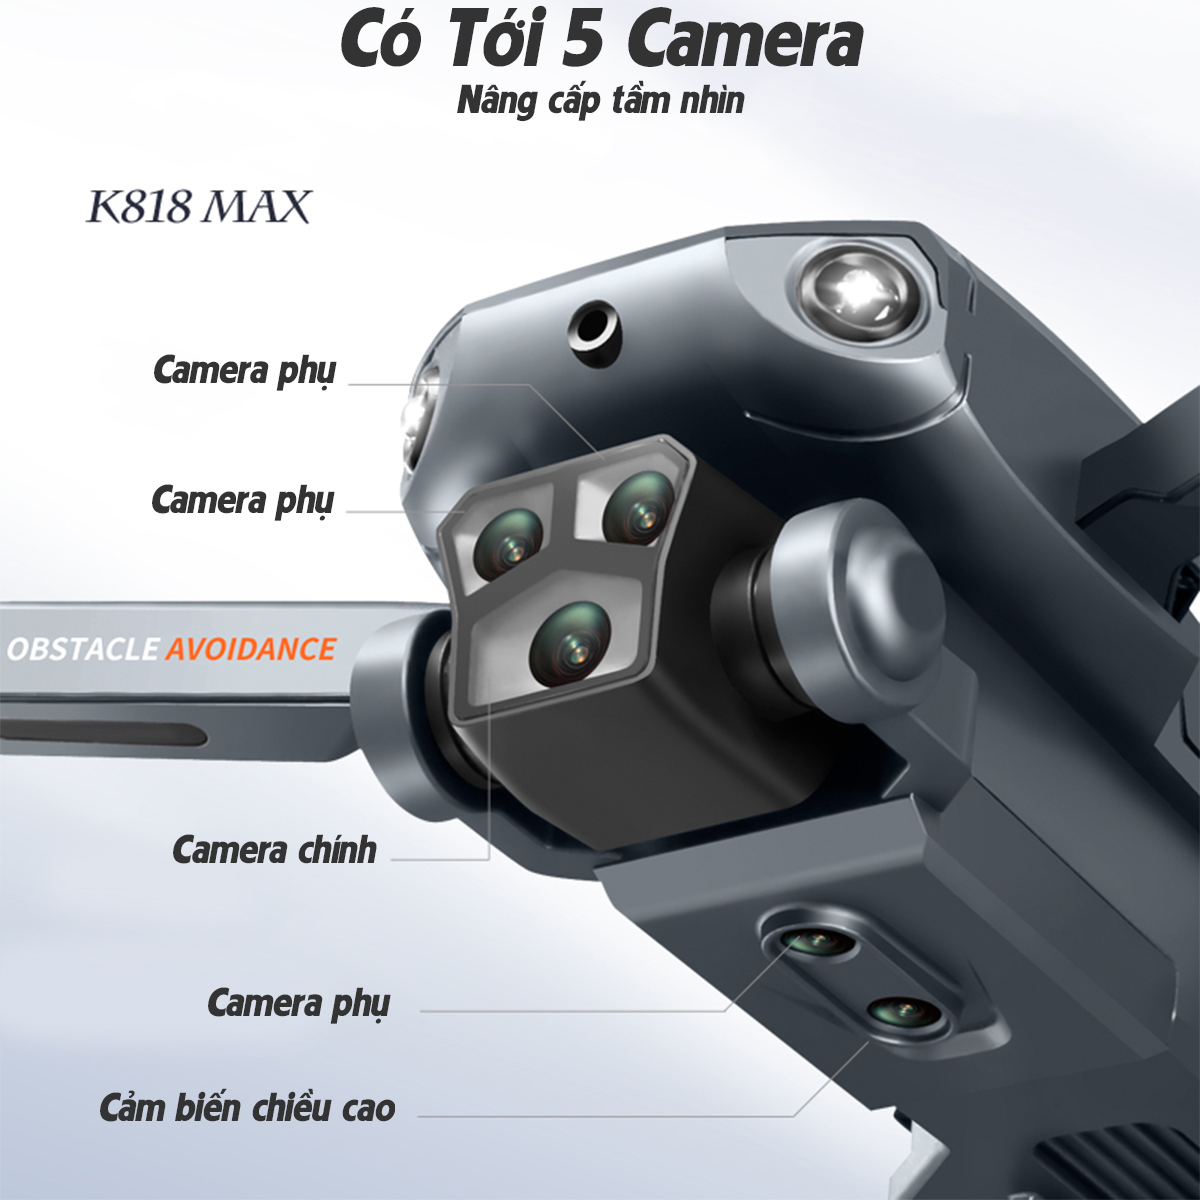 Máy Bay Điều Khiển Từ Xa, Flycam K818 động cơ không chổi than tích hợp 3 camera kép HD -Tránh chướng ngoại vật-Flycam giá rẻ-Flycam mini-Flycam 6k